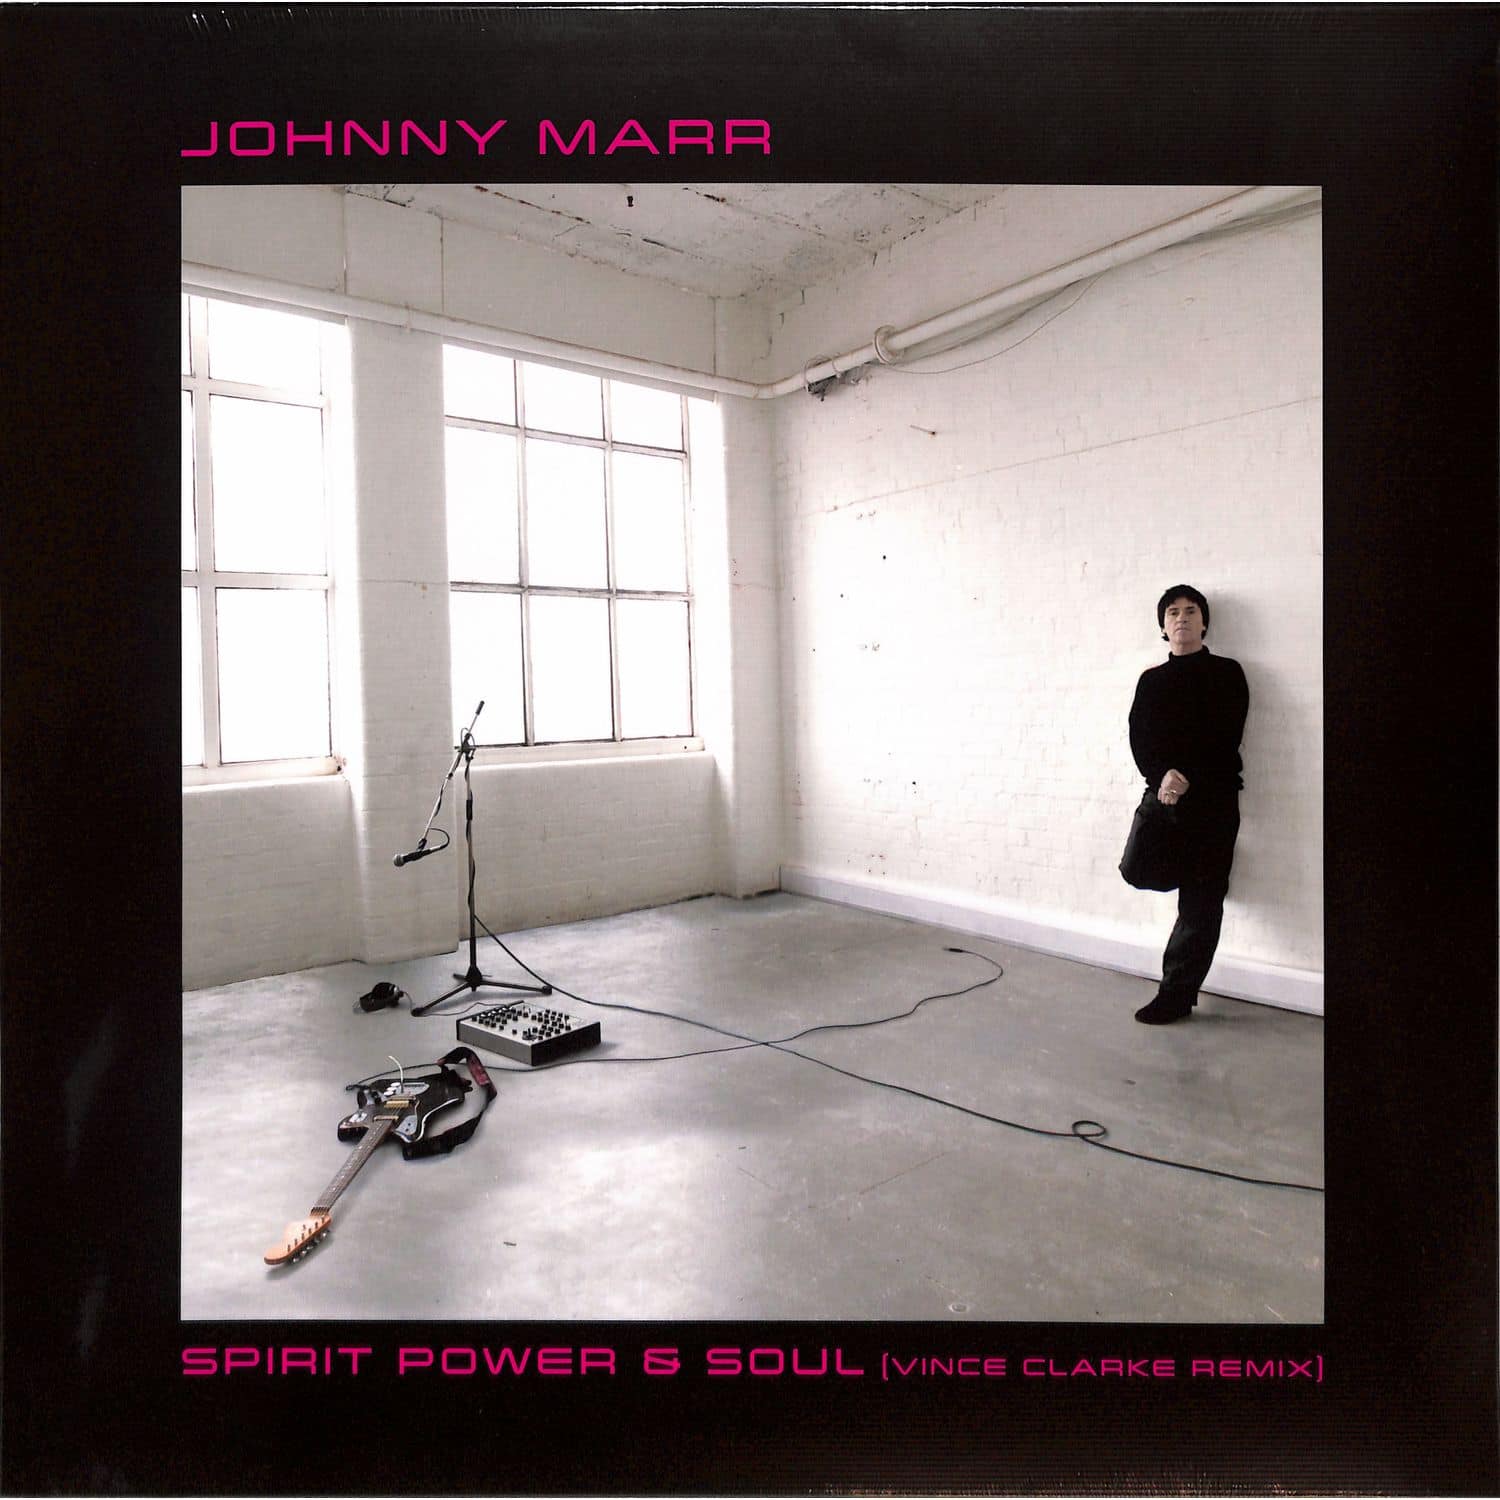 Johnny Marr - SPIRIT, POWER & SOUL 